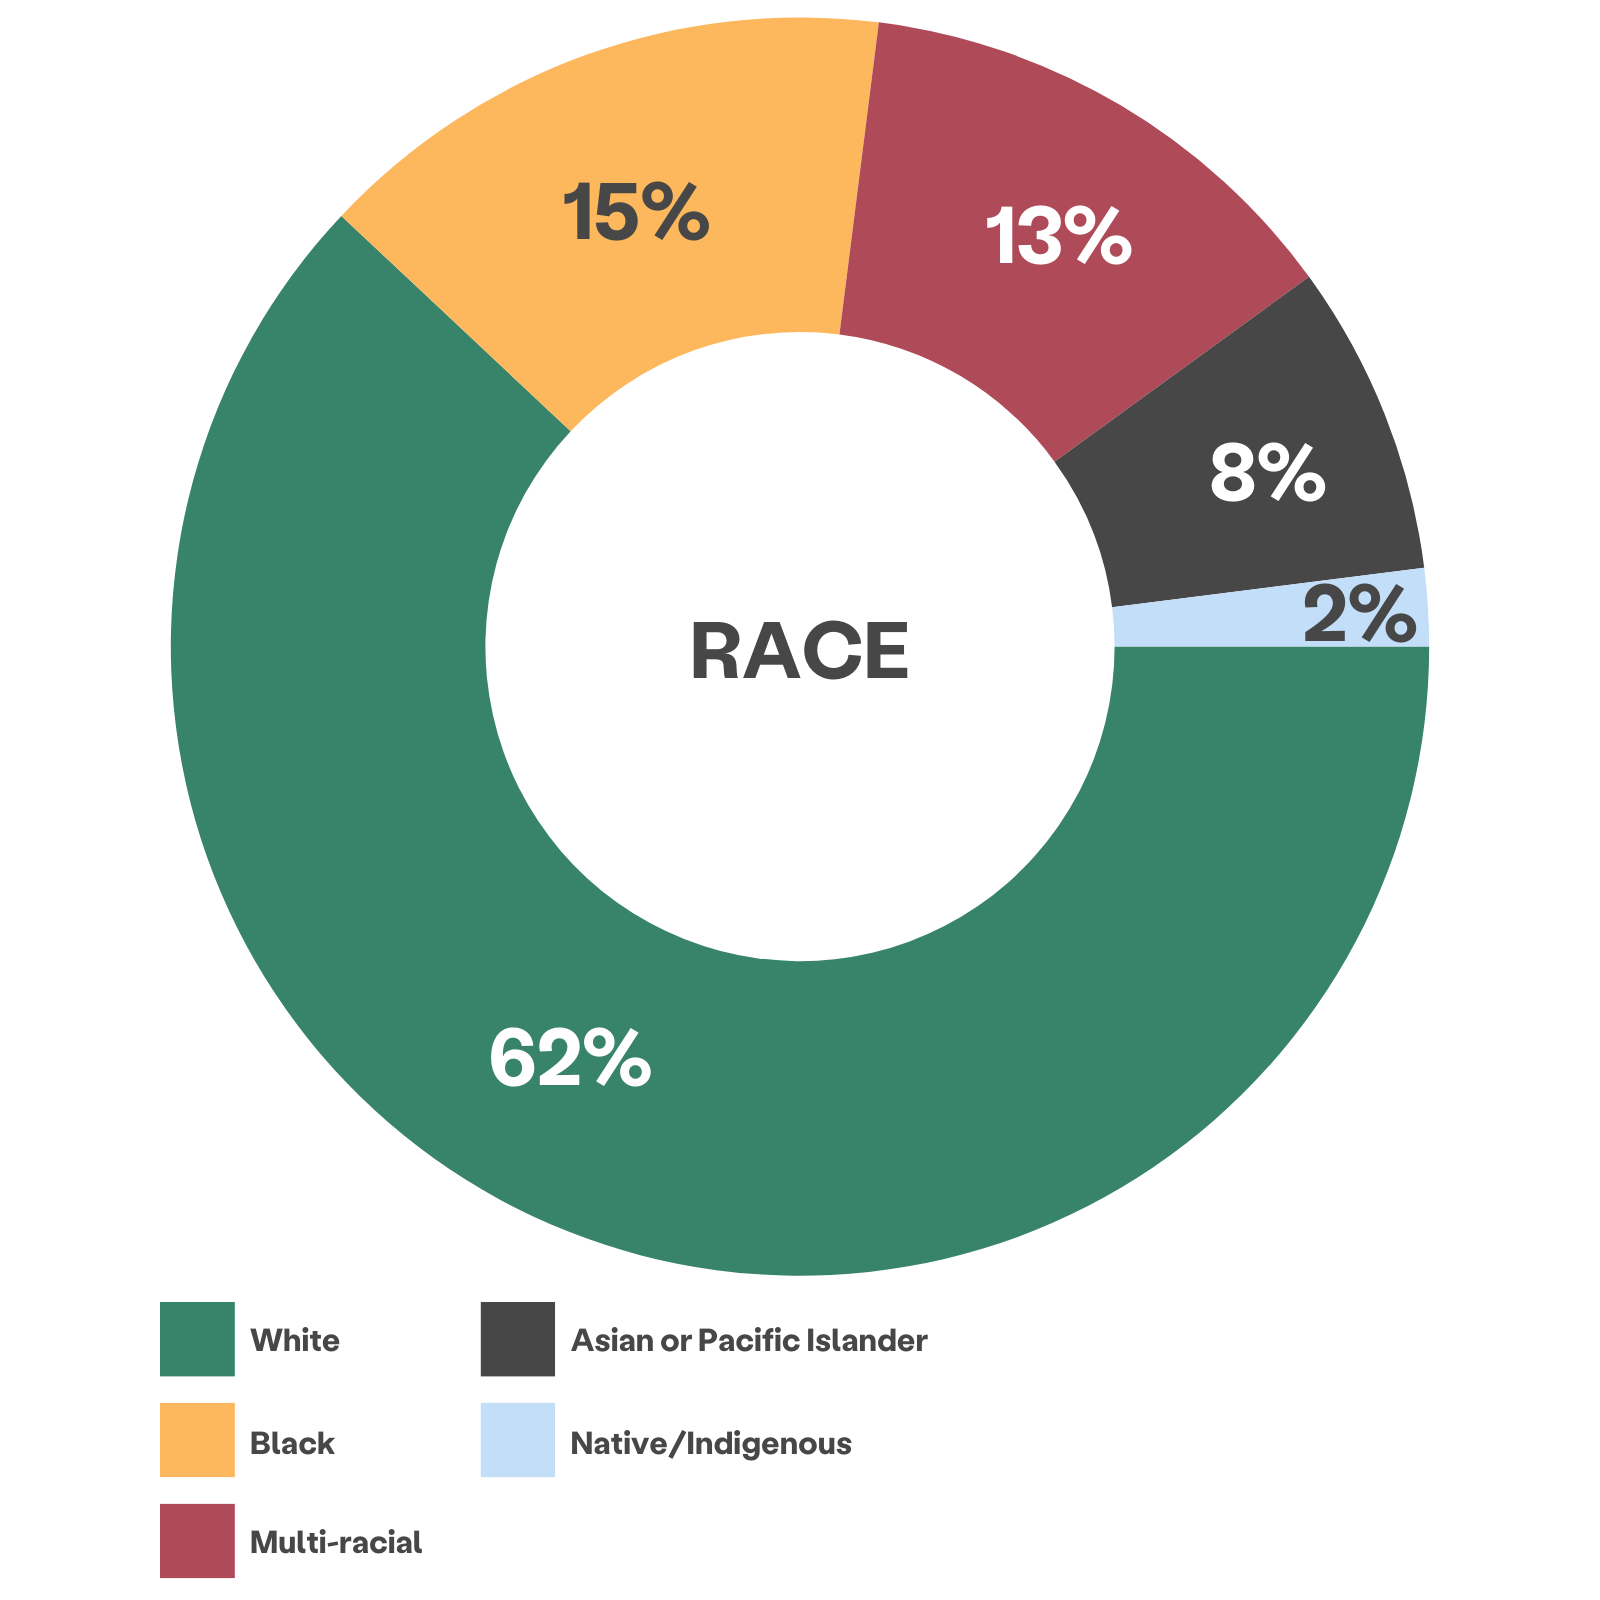 多色轮盘图显示客户种族：62% 白种人，15% 黑人，13% 多种族，8% 亚洲人或太平洋岛民，2% 原住民/土著